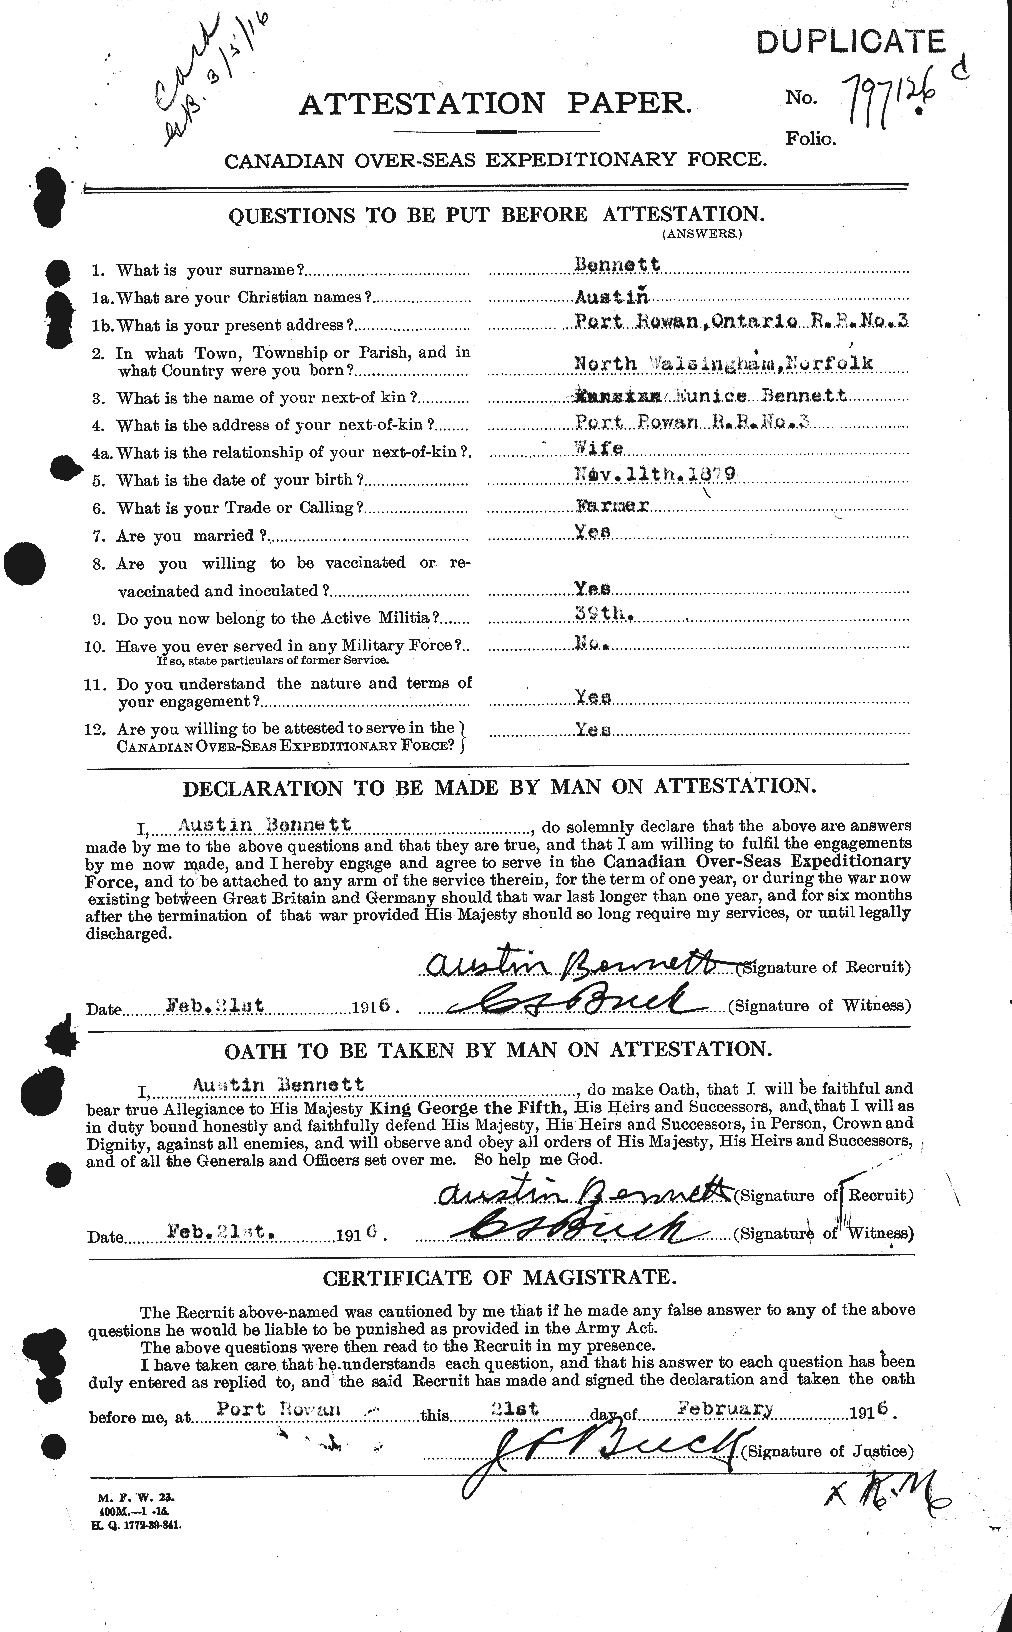 Dossiers du Personnel de la Première Guerre mondiale - CEC 233354a